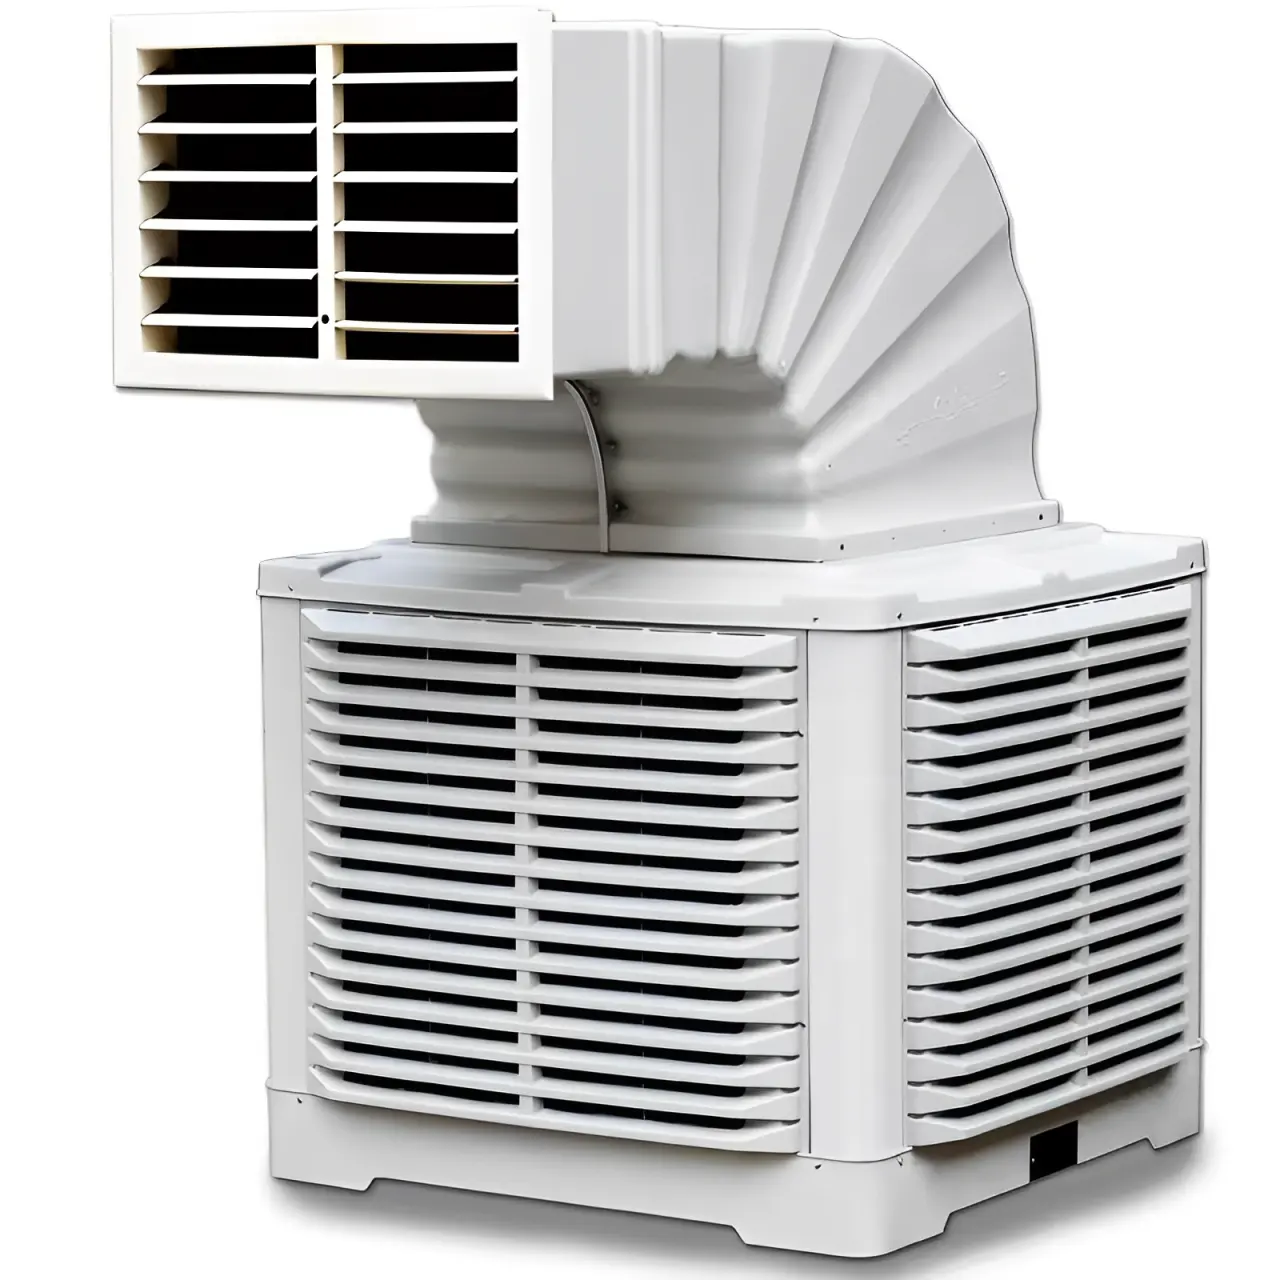 Condotto industriale sistema di climatizzazione/evaporativo aria refrigeratori industriali/raffreddamento ad acqua di scarico ventola di raffreddamento per officina